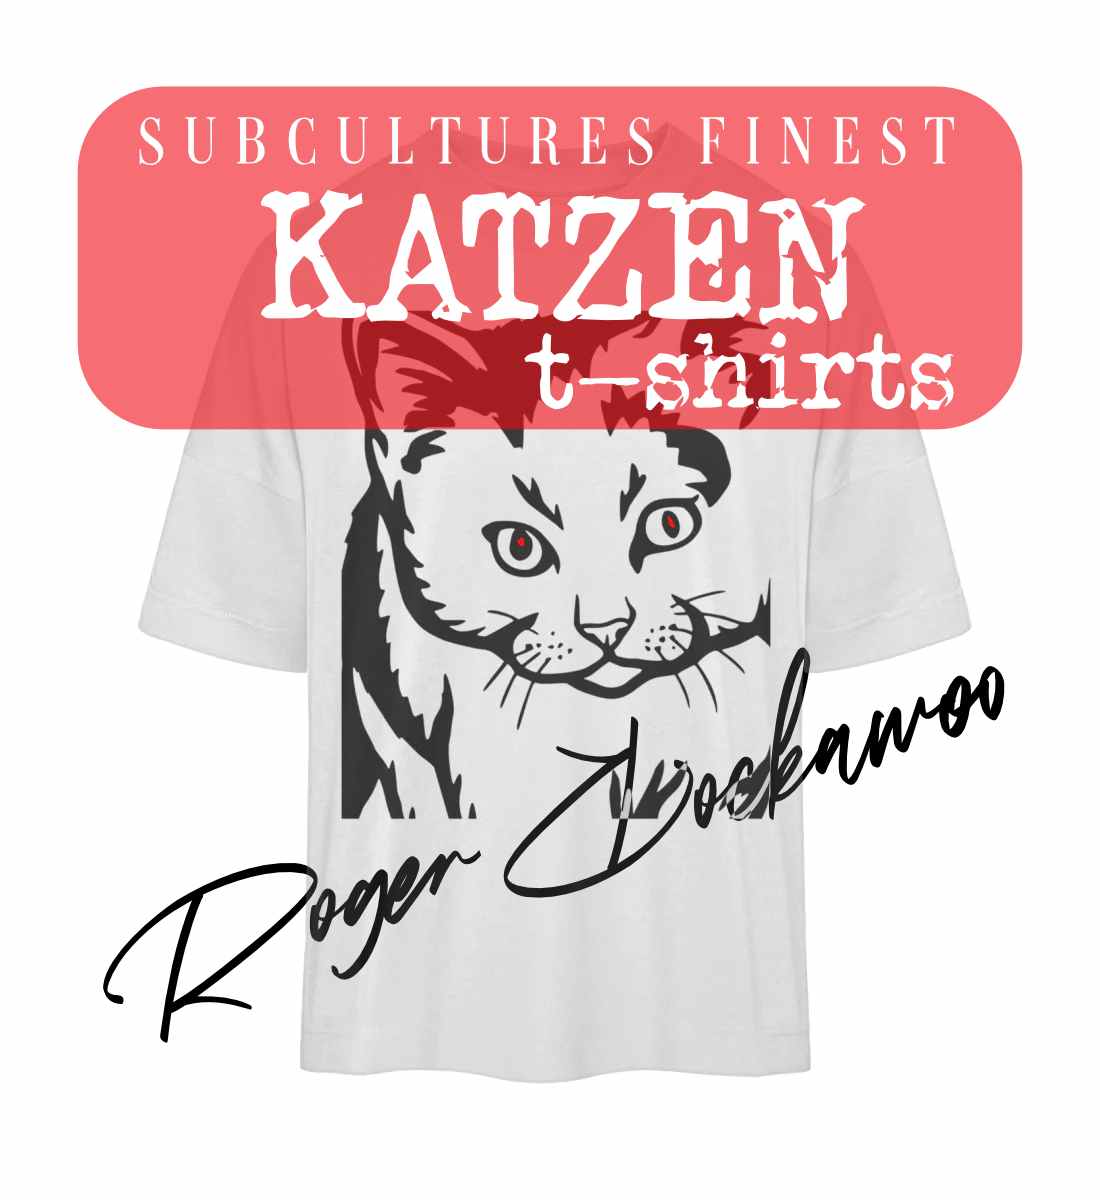 Weißes T-Shirt Unisex Oversize Fit für Frauen und Männer bedruckt mit dem Design der Roger Rockawoo Kollektion Katzen we are not alone